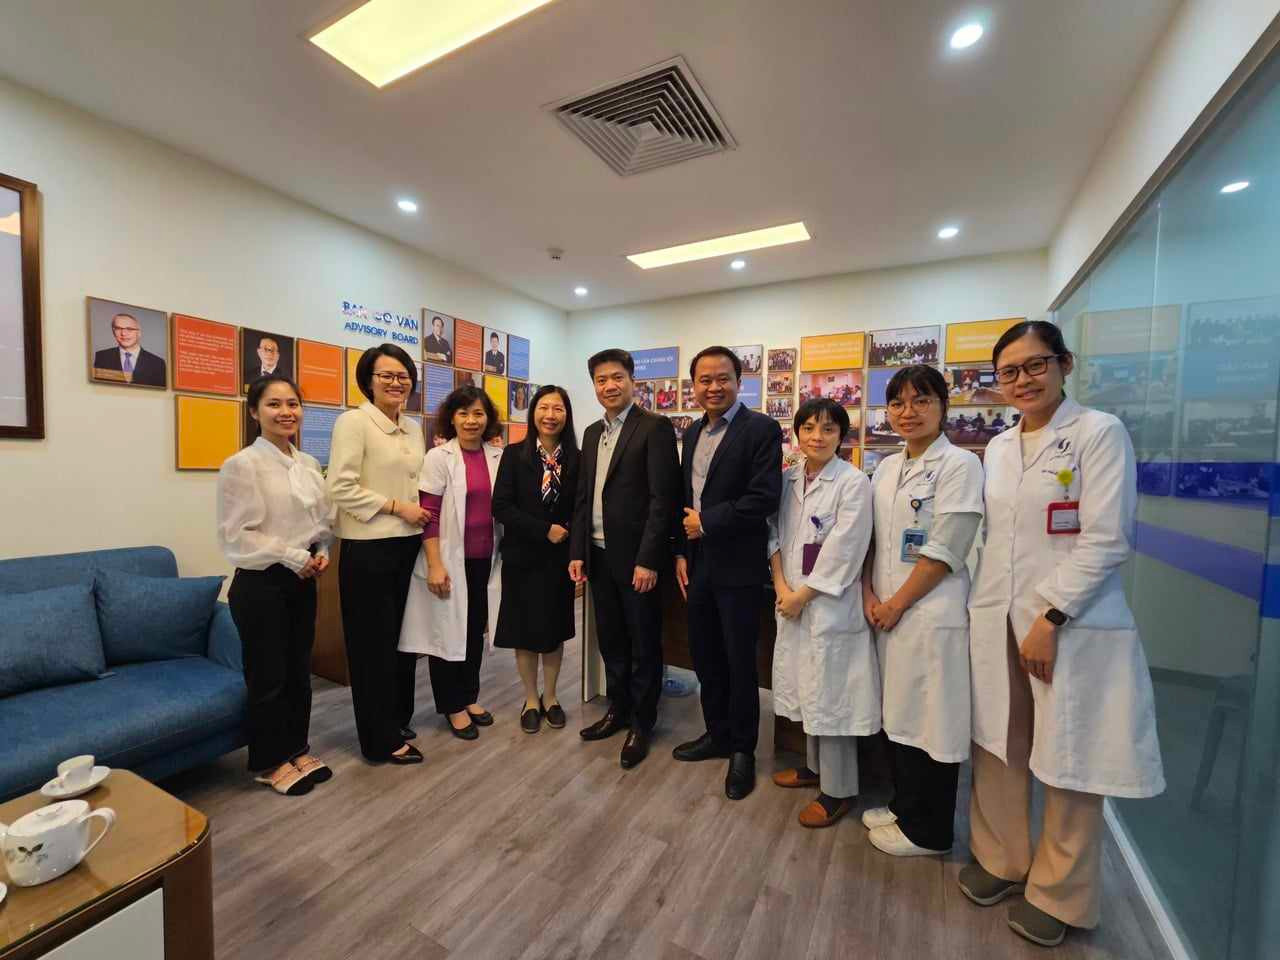 Hợp tác quốc tế nghiên cứu phòng chống sa sút trí tuệ ở Việt Nam: Những bước đi dài của ngành y tế Việt - ảnh 3